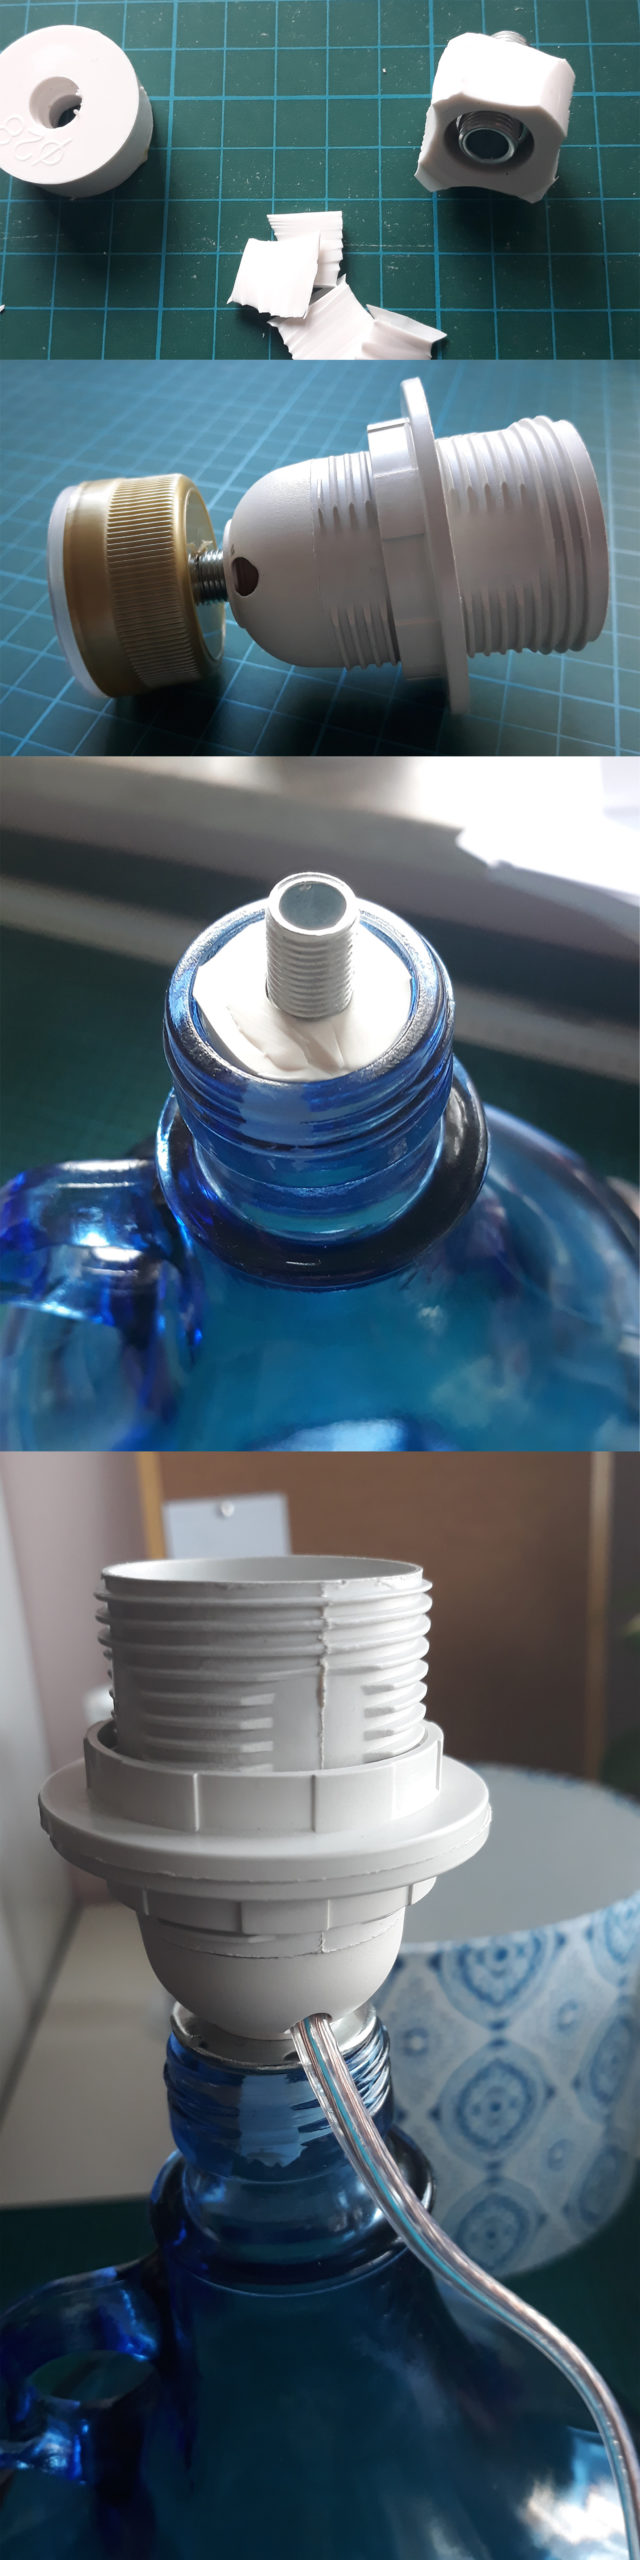 jak zrobić lampę z butelki bez wiercenia w szkle